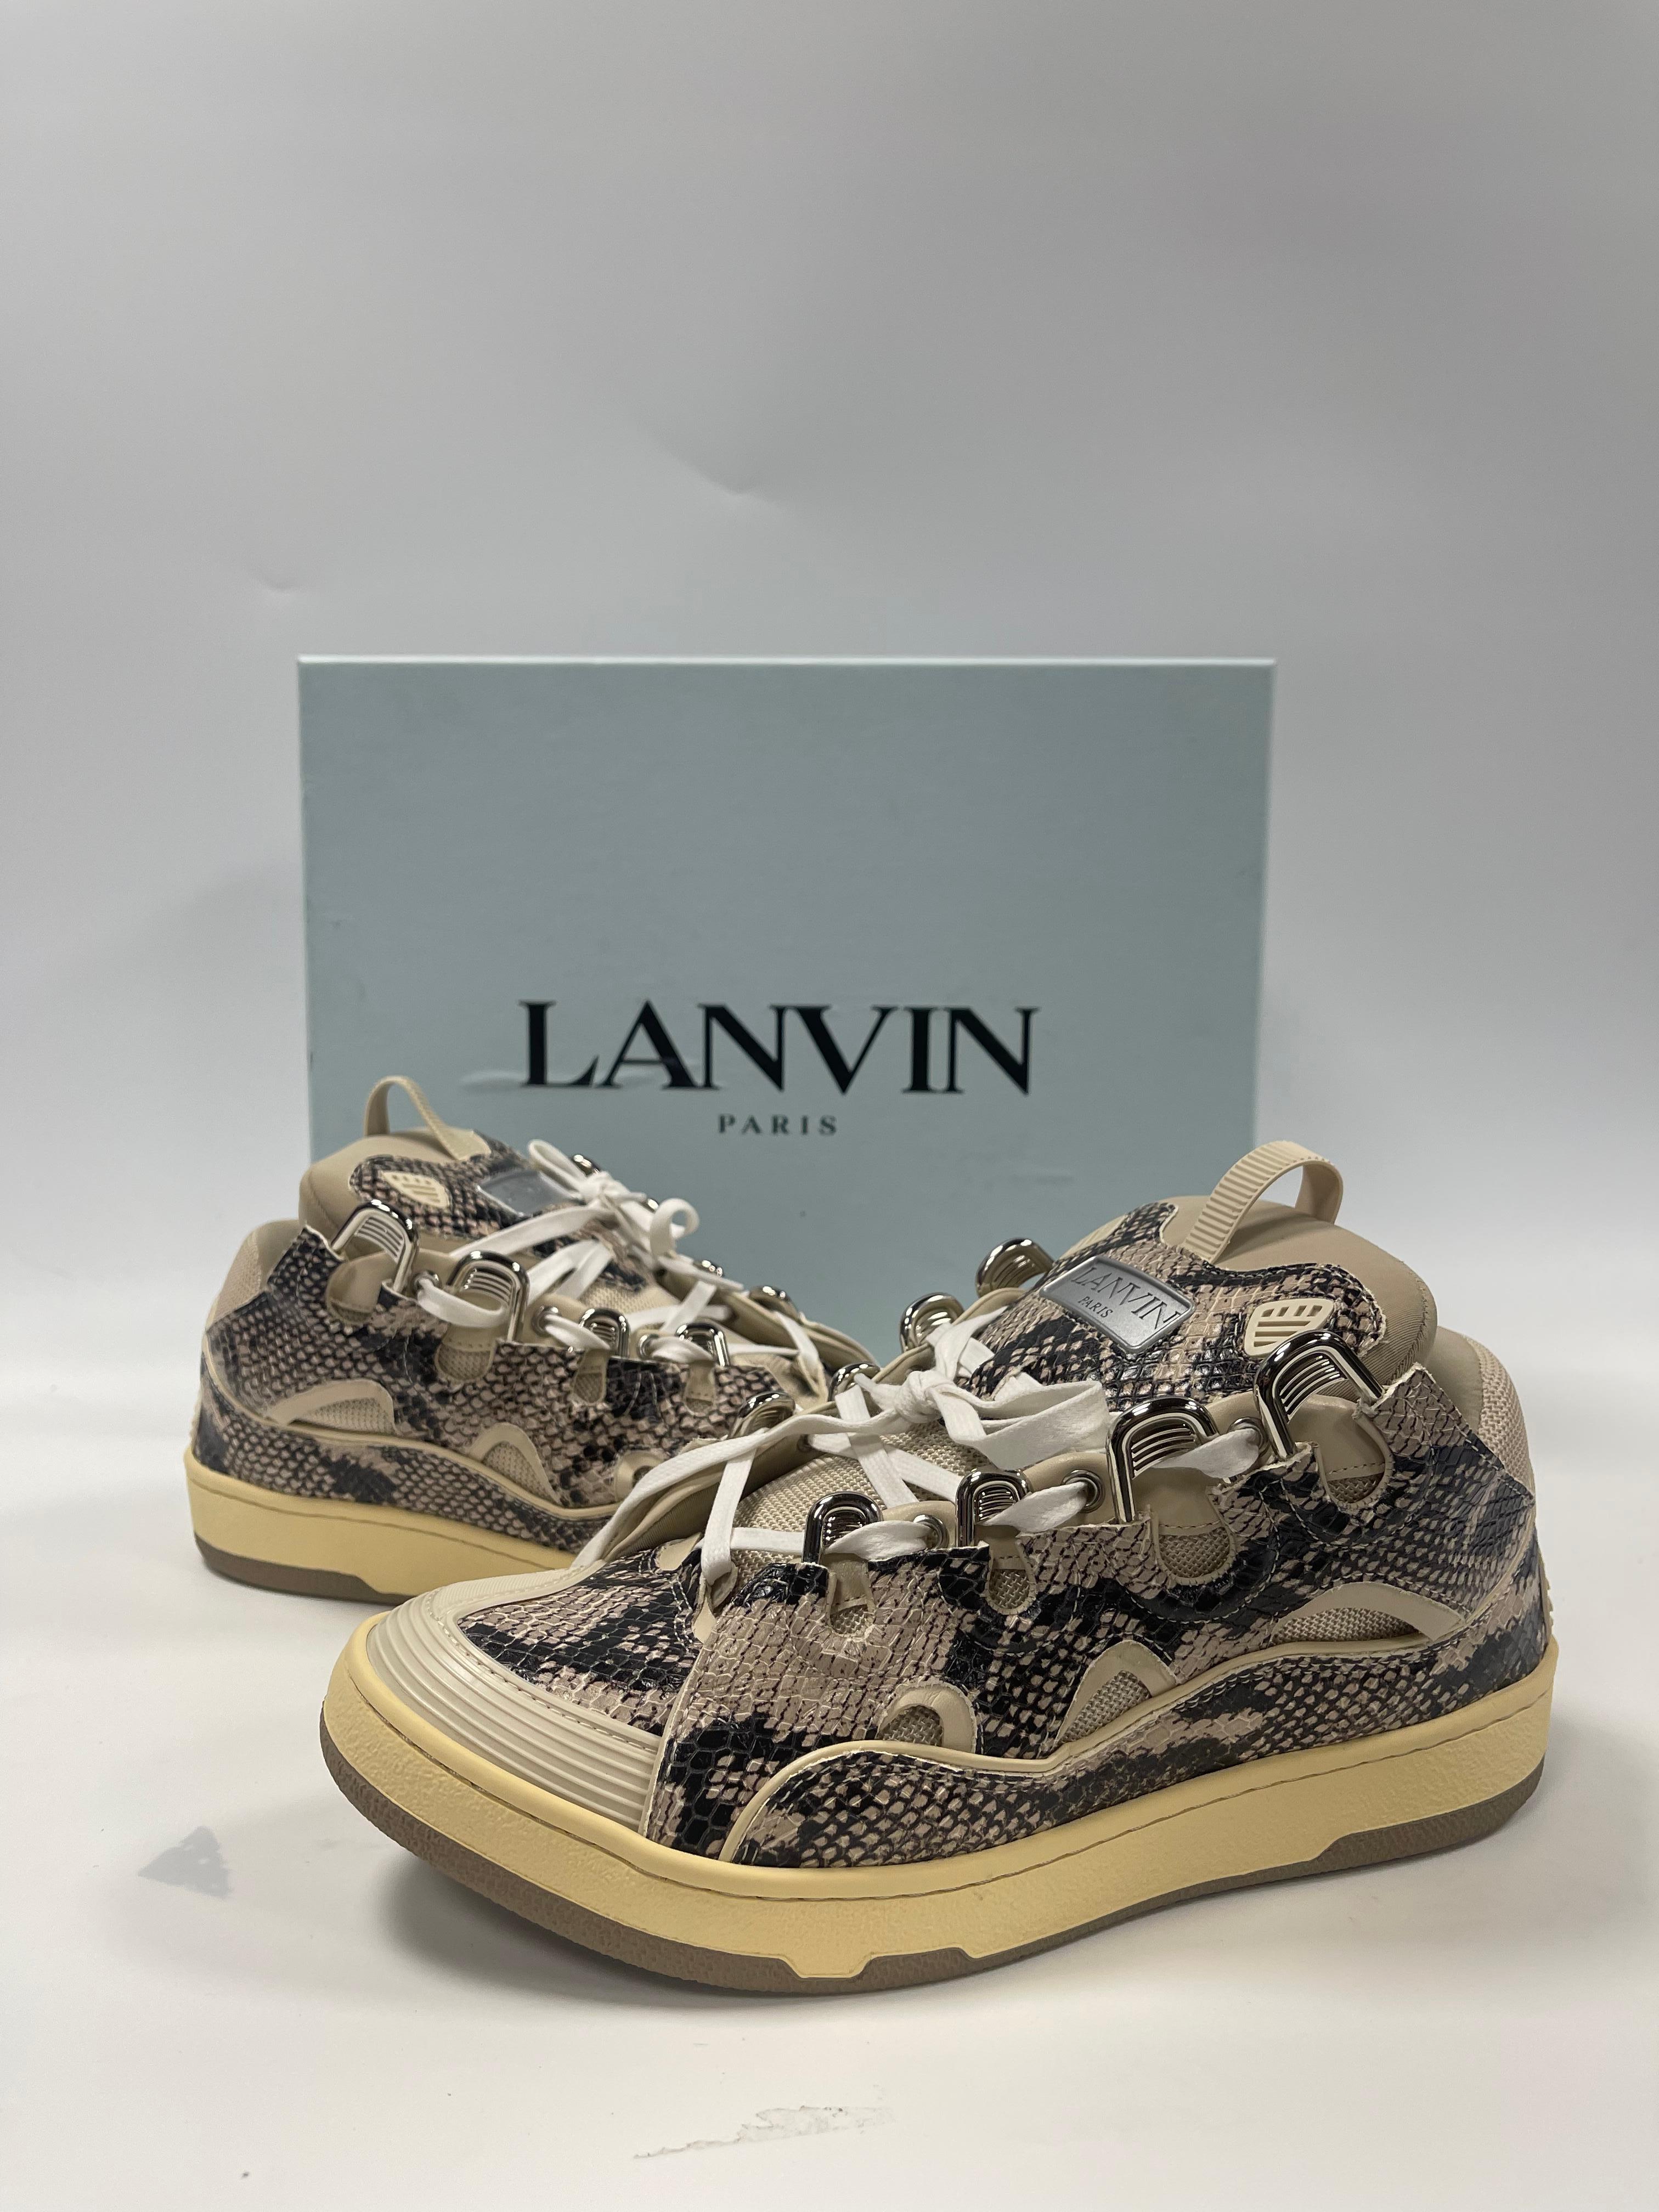 Lanvin s'est inspiré des styles de skateboard des années 90 pour créer cette chaussure. Surdimensionnée et exubérante, la basket Curb se distingue par son confort extraordinaire qui provient de sa forme arrondie et de son padding massif. Style :